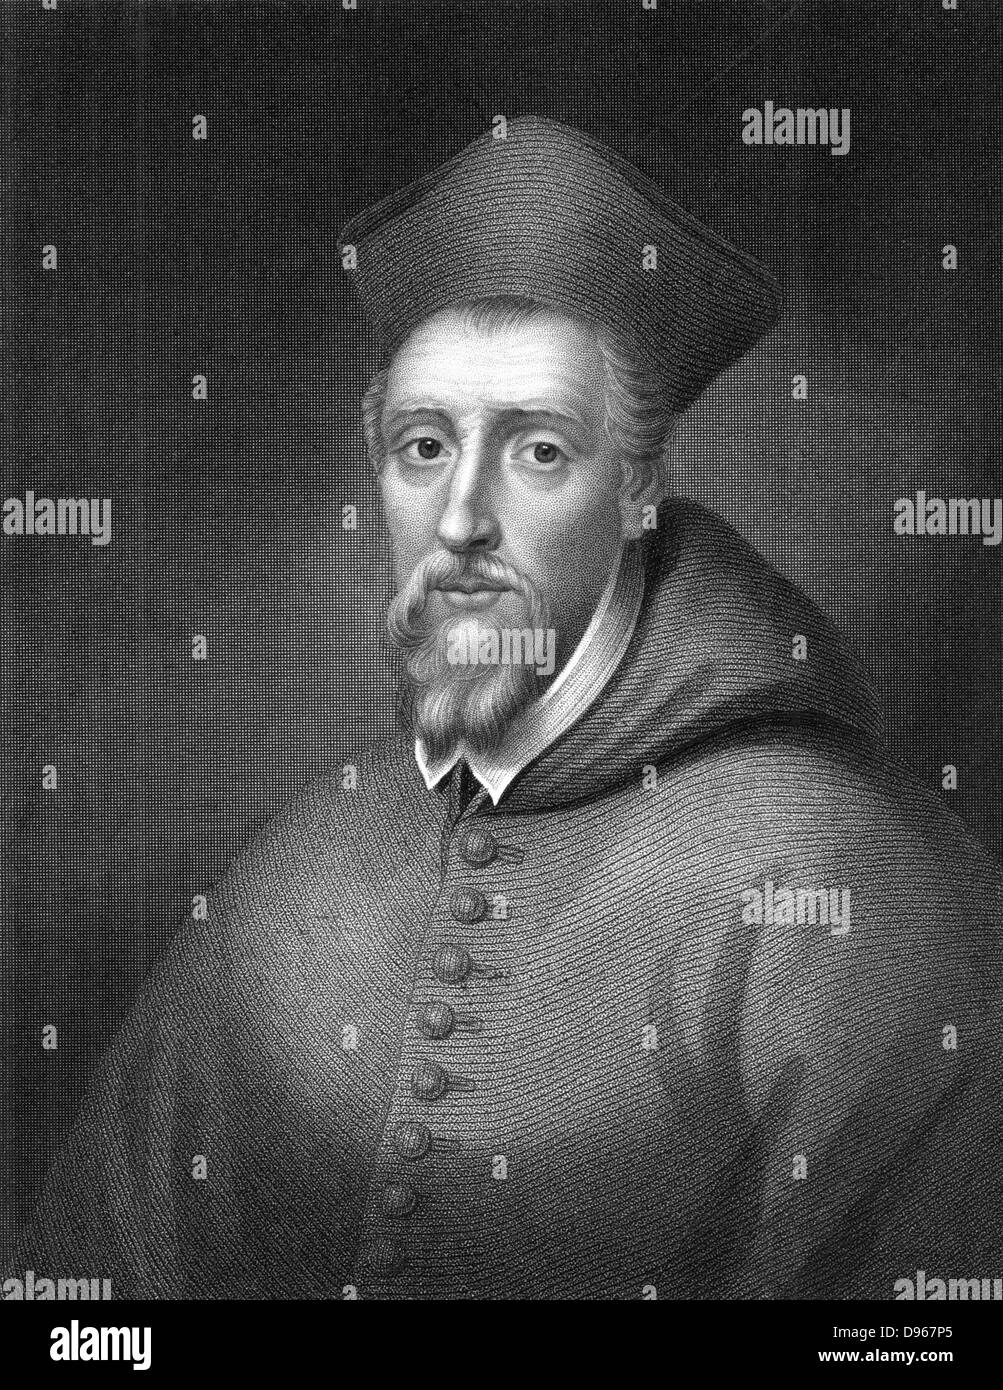 William Allen (1532-1594) prelato inglese; creato cardinale 1587. Sulla adesione di Elizabeth Mi sono recato in esilio. Fondata collegi inglesi a formare i missionari a riconvertire Inghilterra del Cattolicesimo Romano. Morì a Roma. Incisione Foto Stock